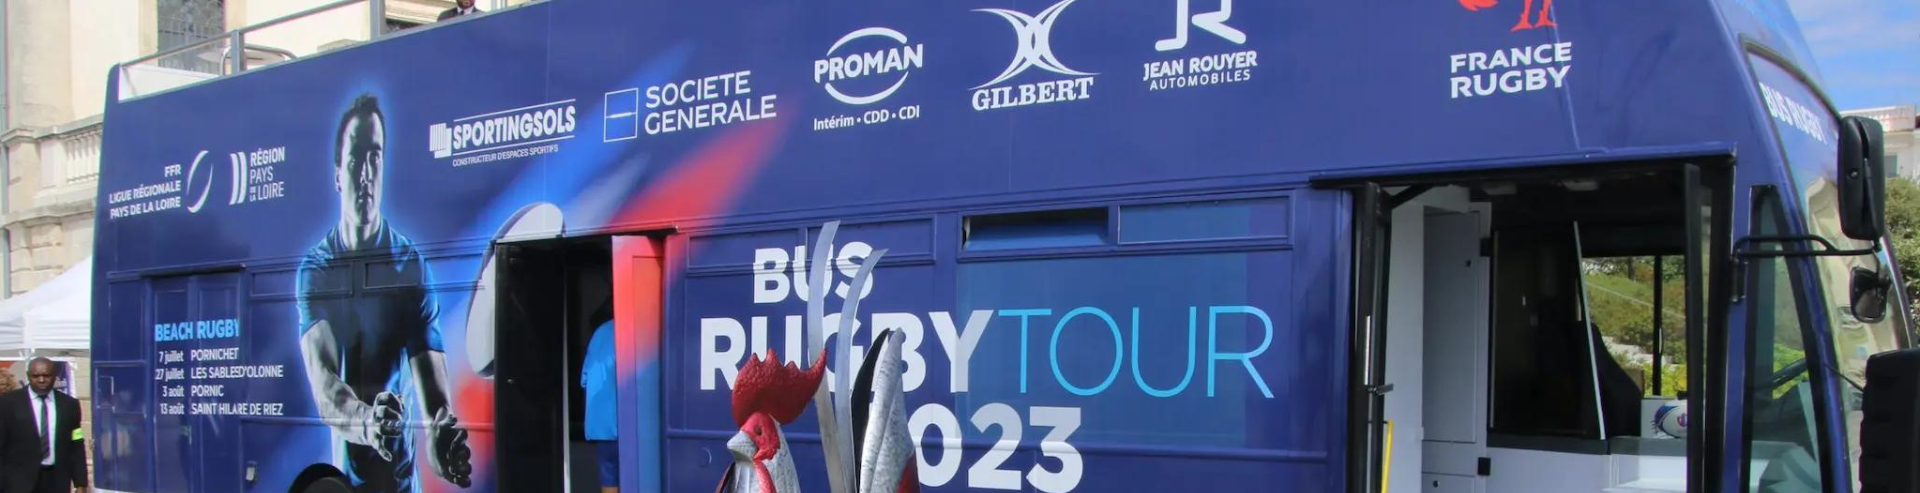 Le Conseil départemental de la Mayenne, partenaire de l’opération « Bus Rugby Tour 2023 »